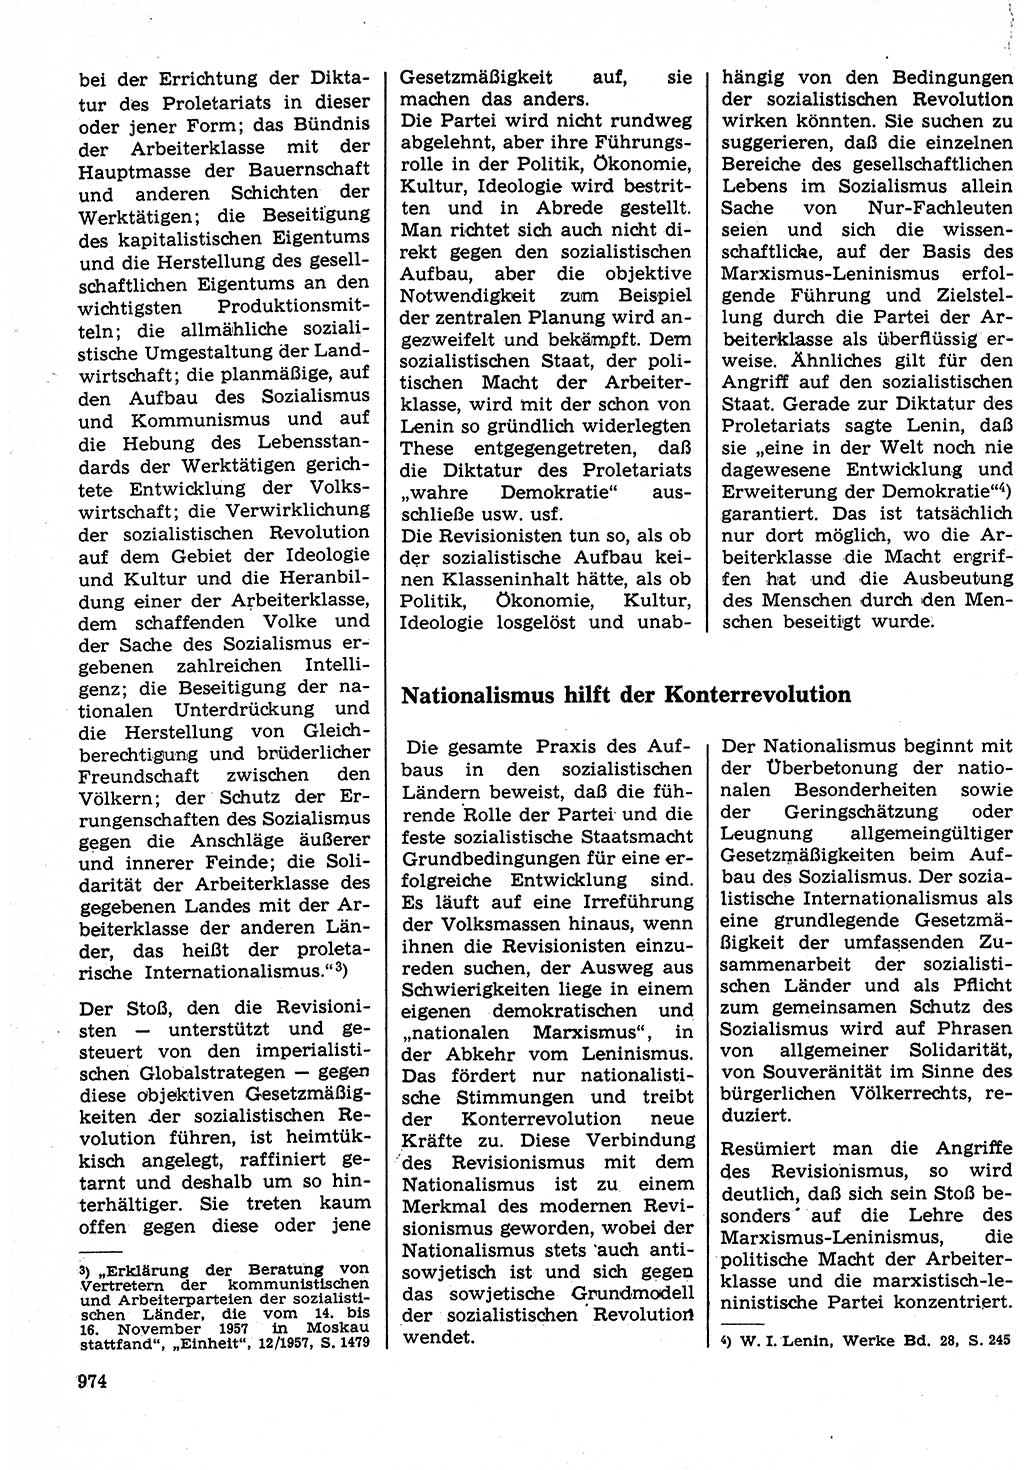 Neuer Weg (NW), Organ des Zentralkomitees (ZK) der SED (Sozialistische Einheitspartei Deutschlands) für Fragen des Parteilebens, 23. Jahrgang [Deutsche Demokratische Republik (DDR)] 1968, Seite 958 (NW ZK SED DDR 1968, S. 958)